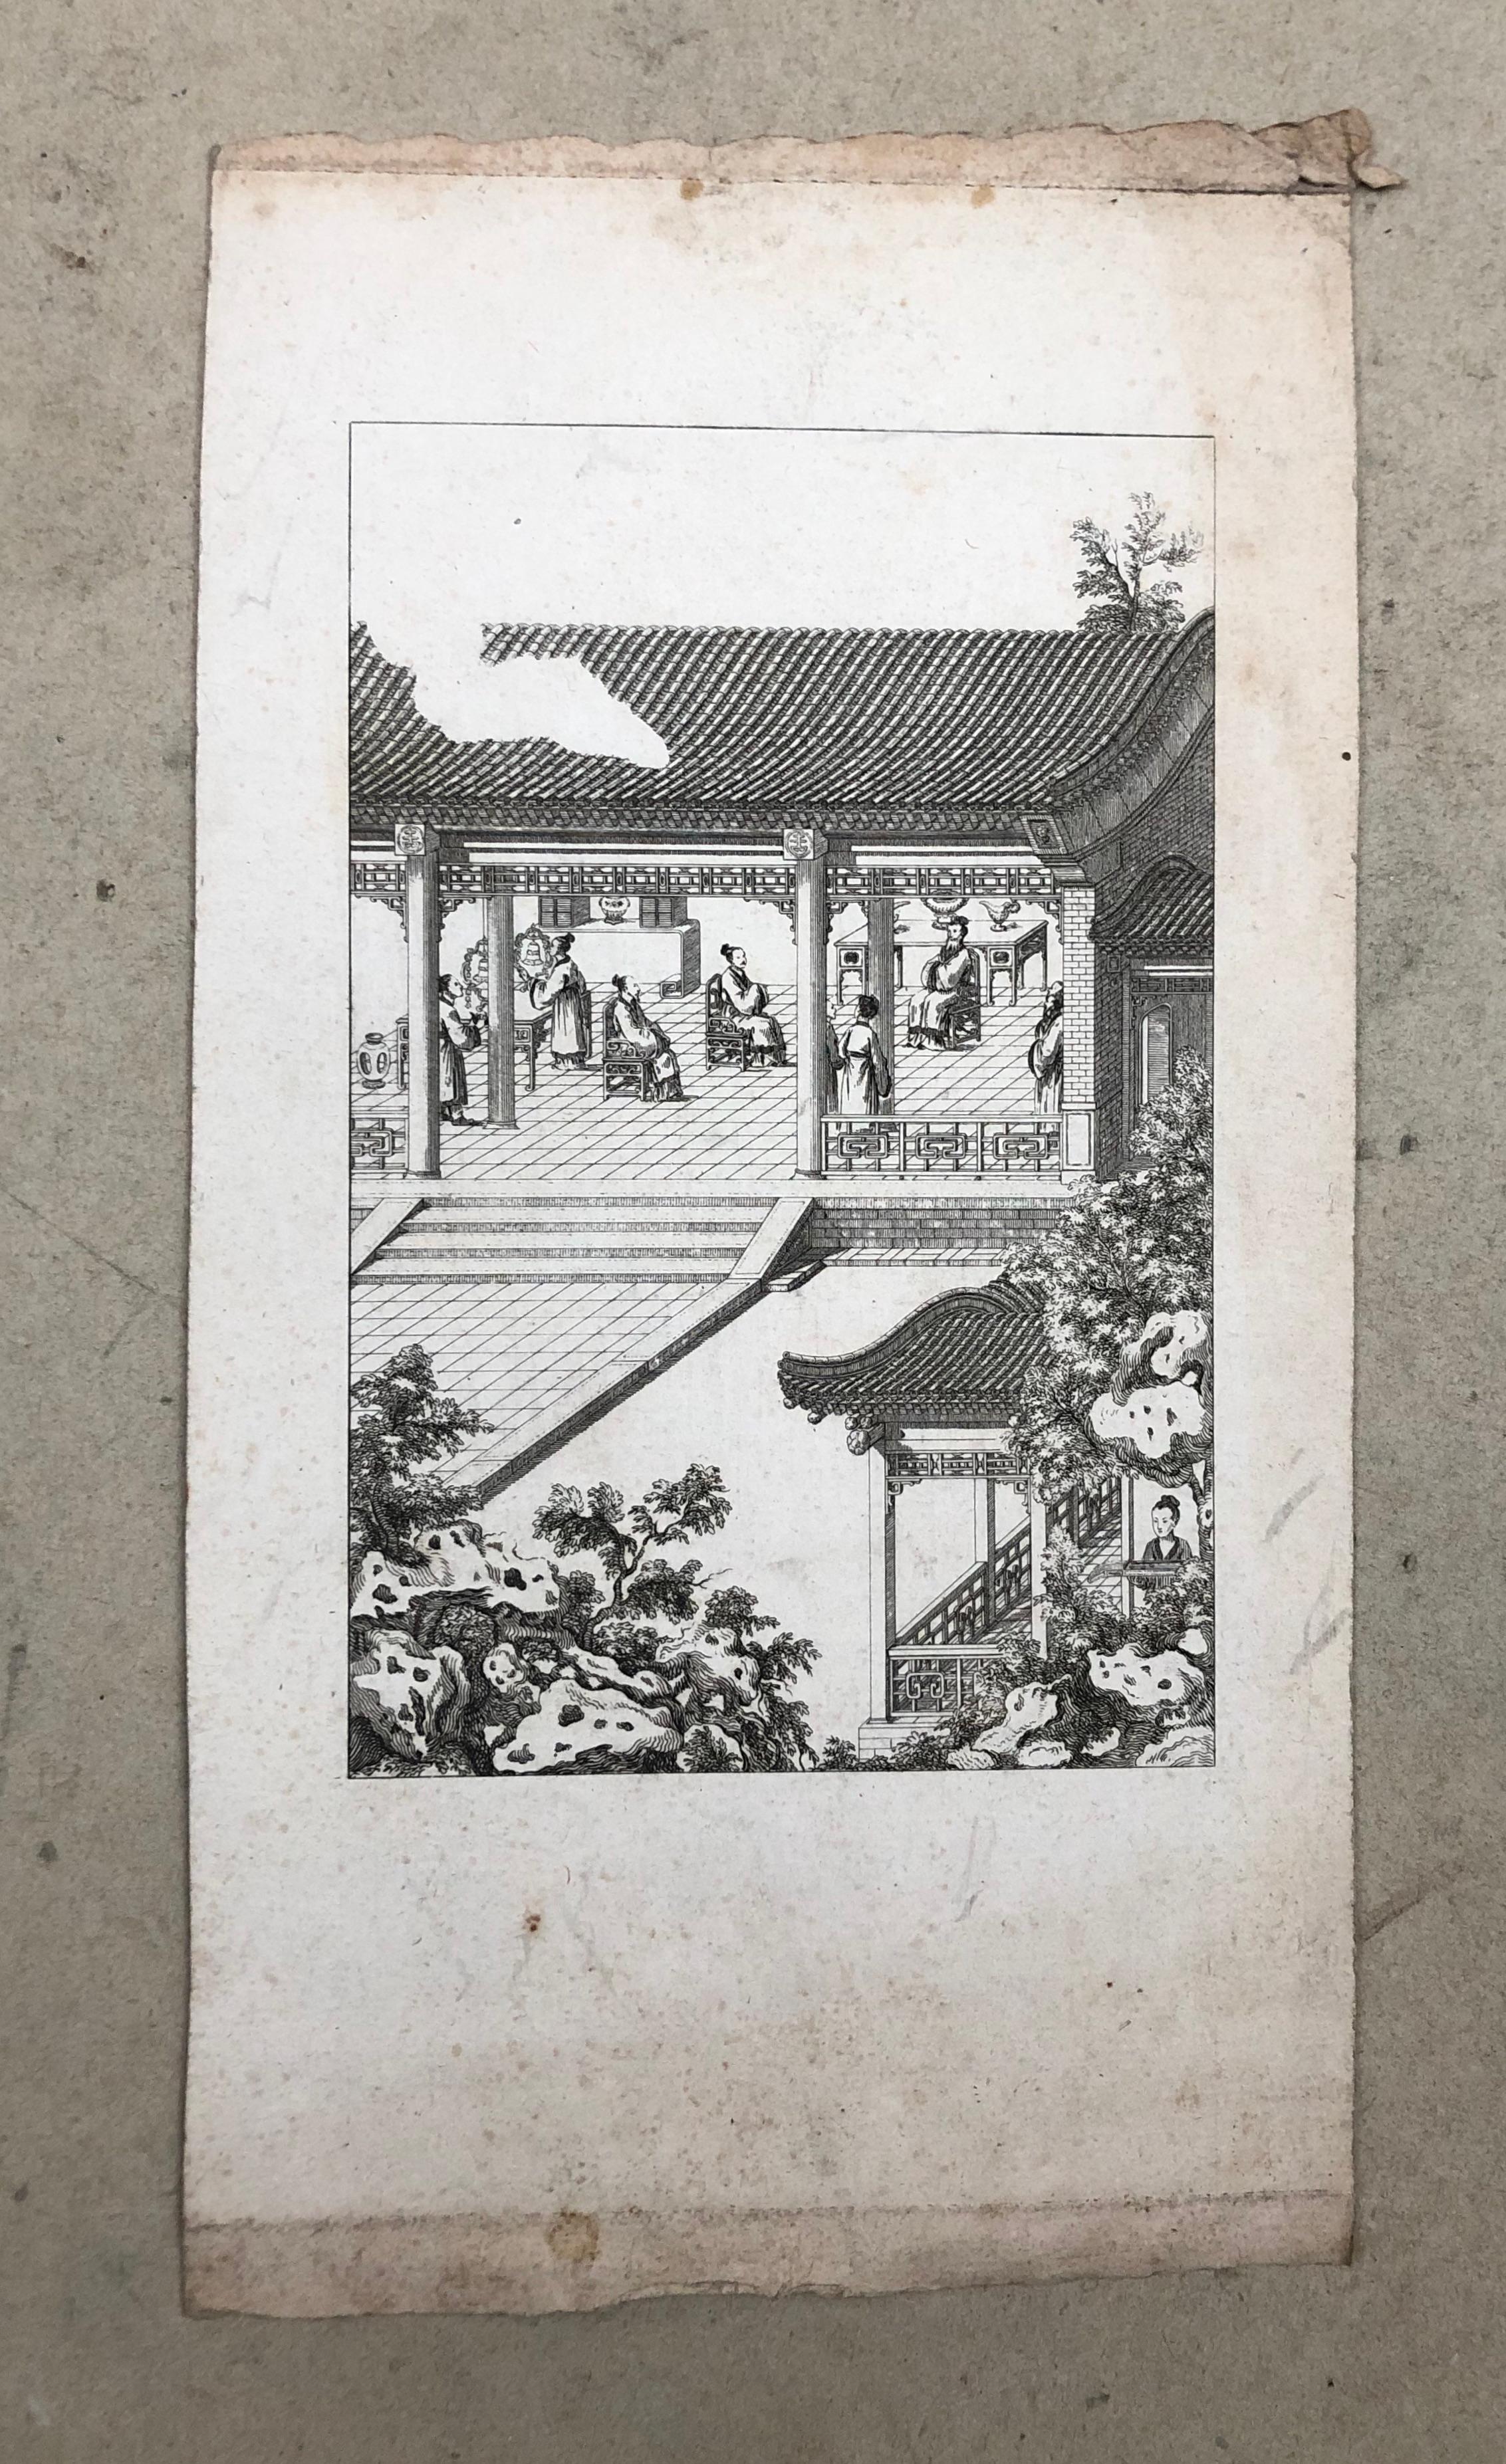 Szenen aus dem chinesischen Leben.
6 Stiche aus dem Ende des 18. oder dem Anfang des 19. Jahrhunderts.
Flecken und Sommersprossen.
Foldes oder kleine Risse in den Rändern für einige Platten.
Von 24 x 17 cm bis 30 x 16 cm